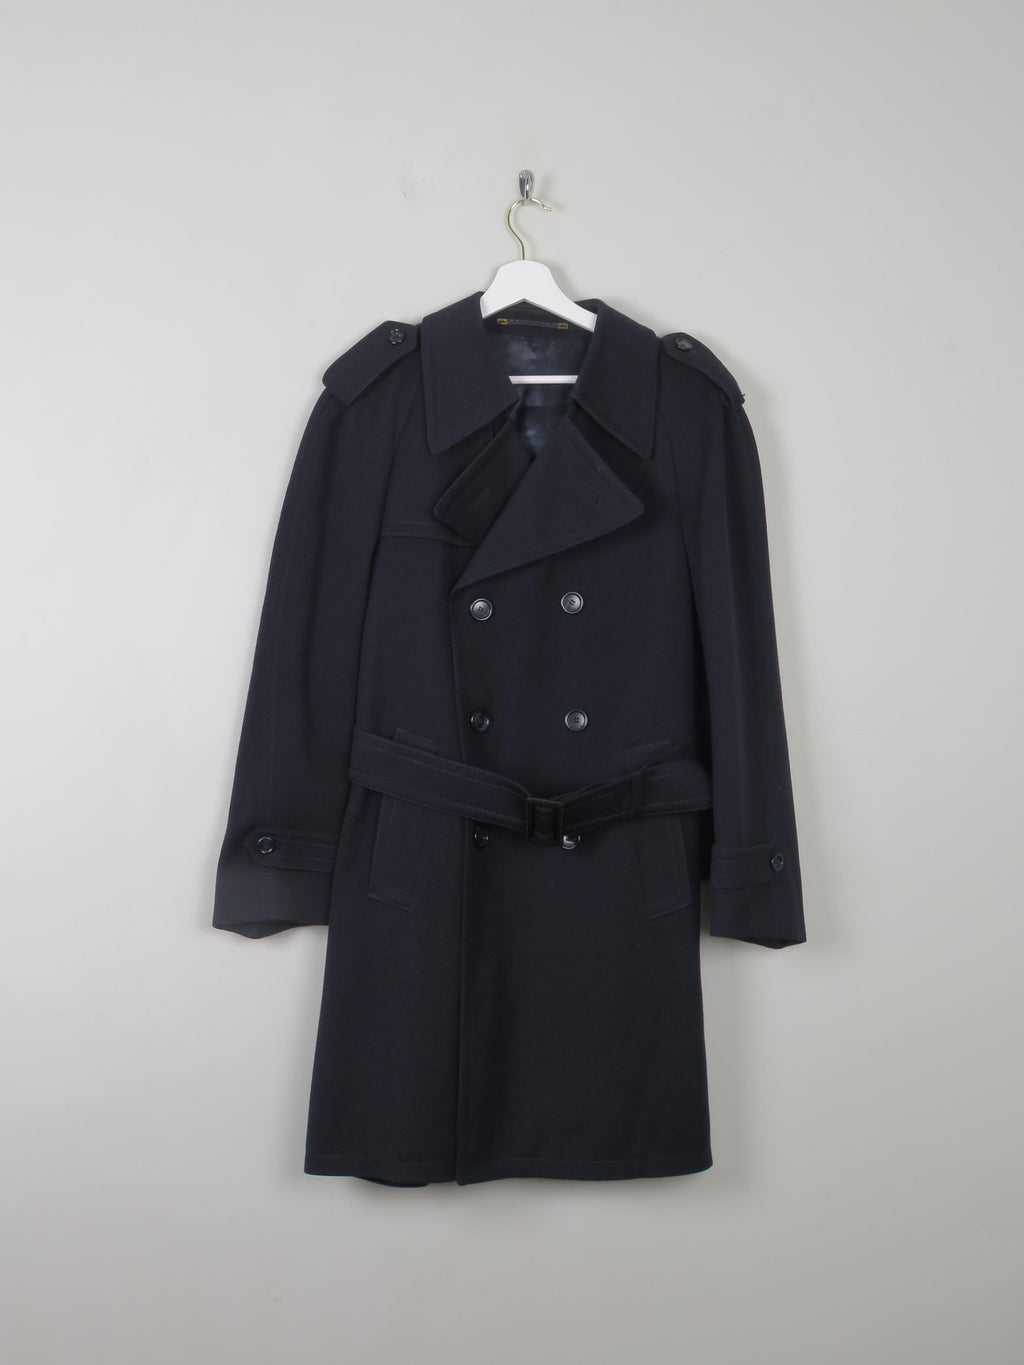 Mens Vintage Short Coat With Belt S - The Harlequin